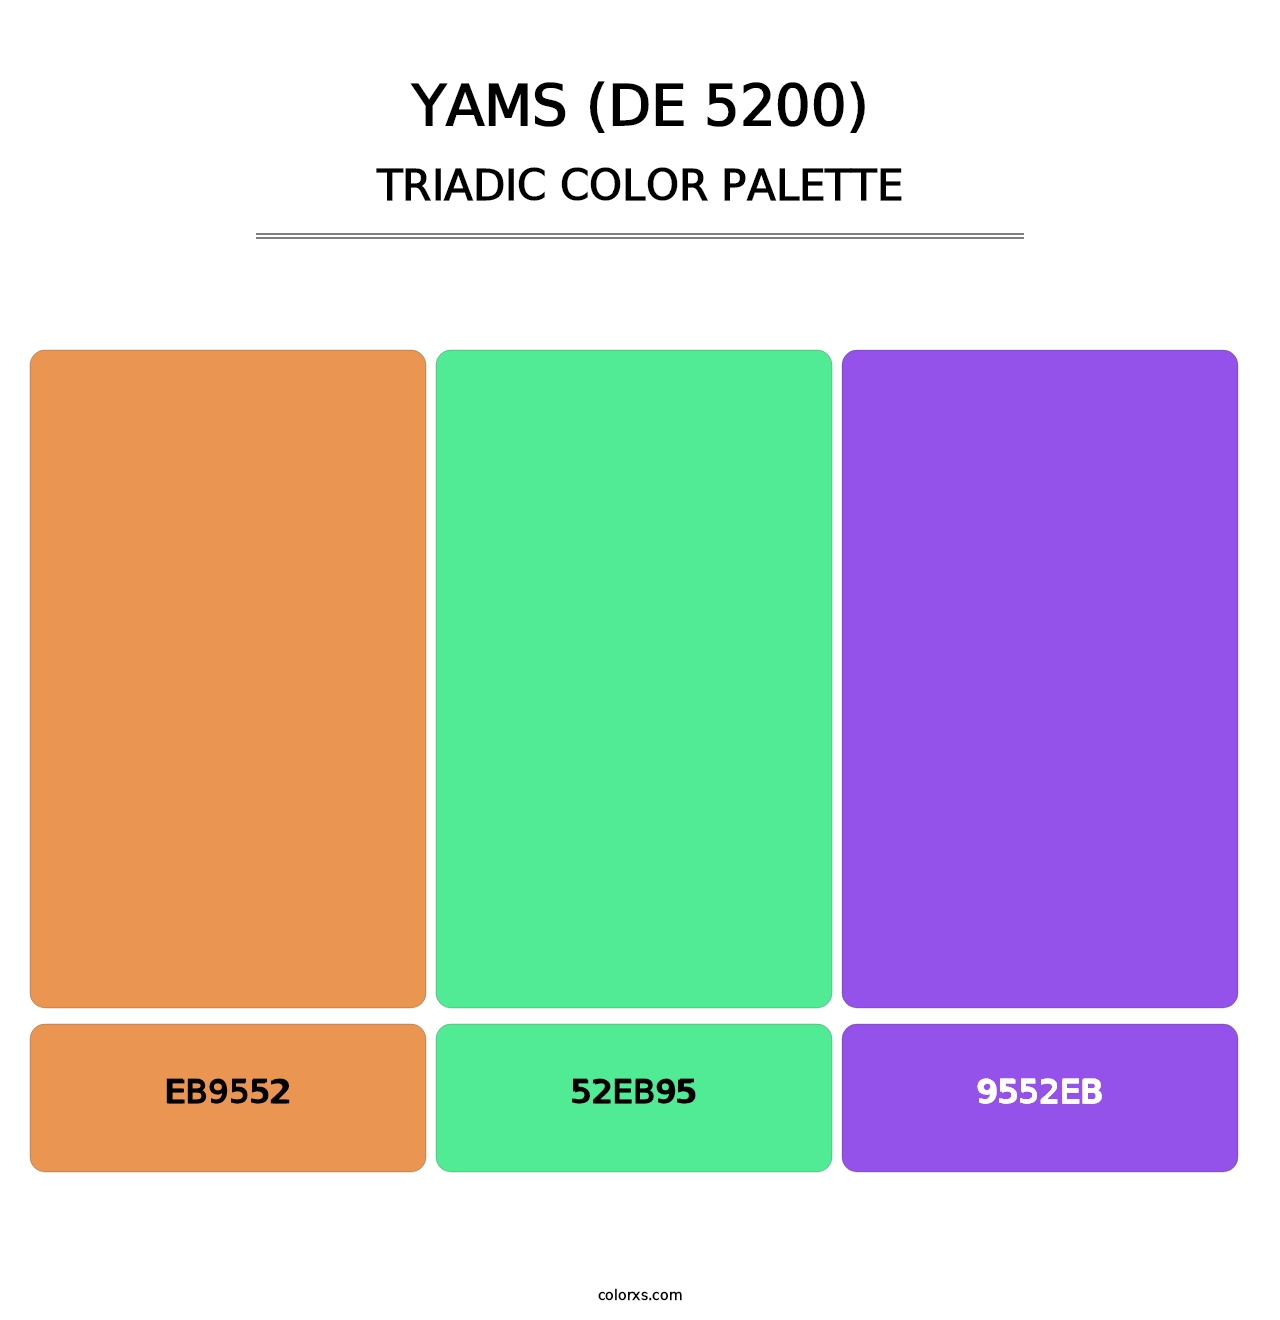 Yams (DE 5200) - Triadic Color Palette